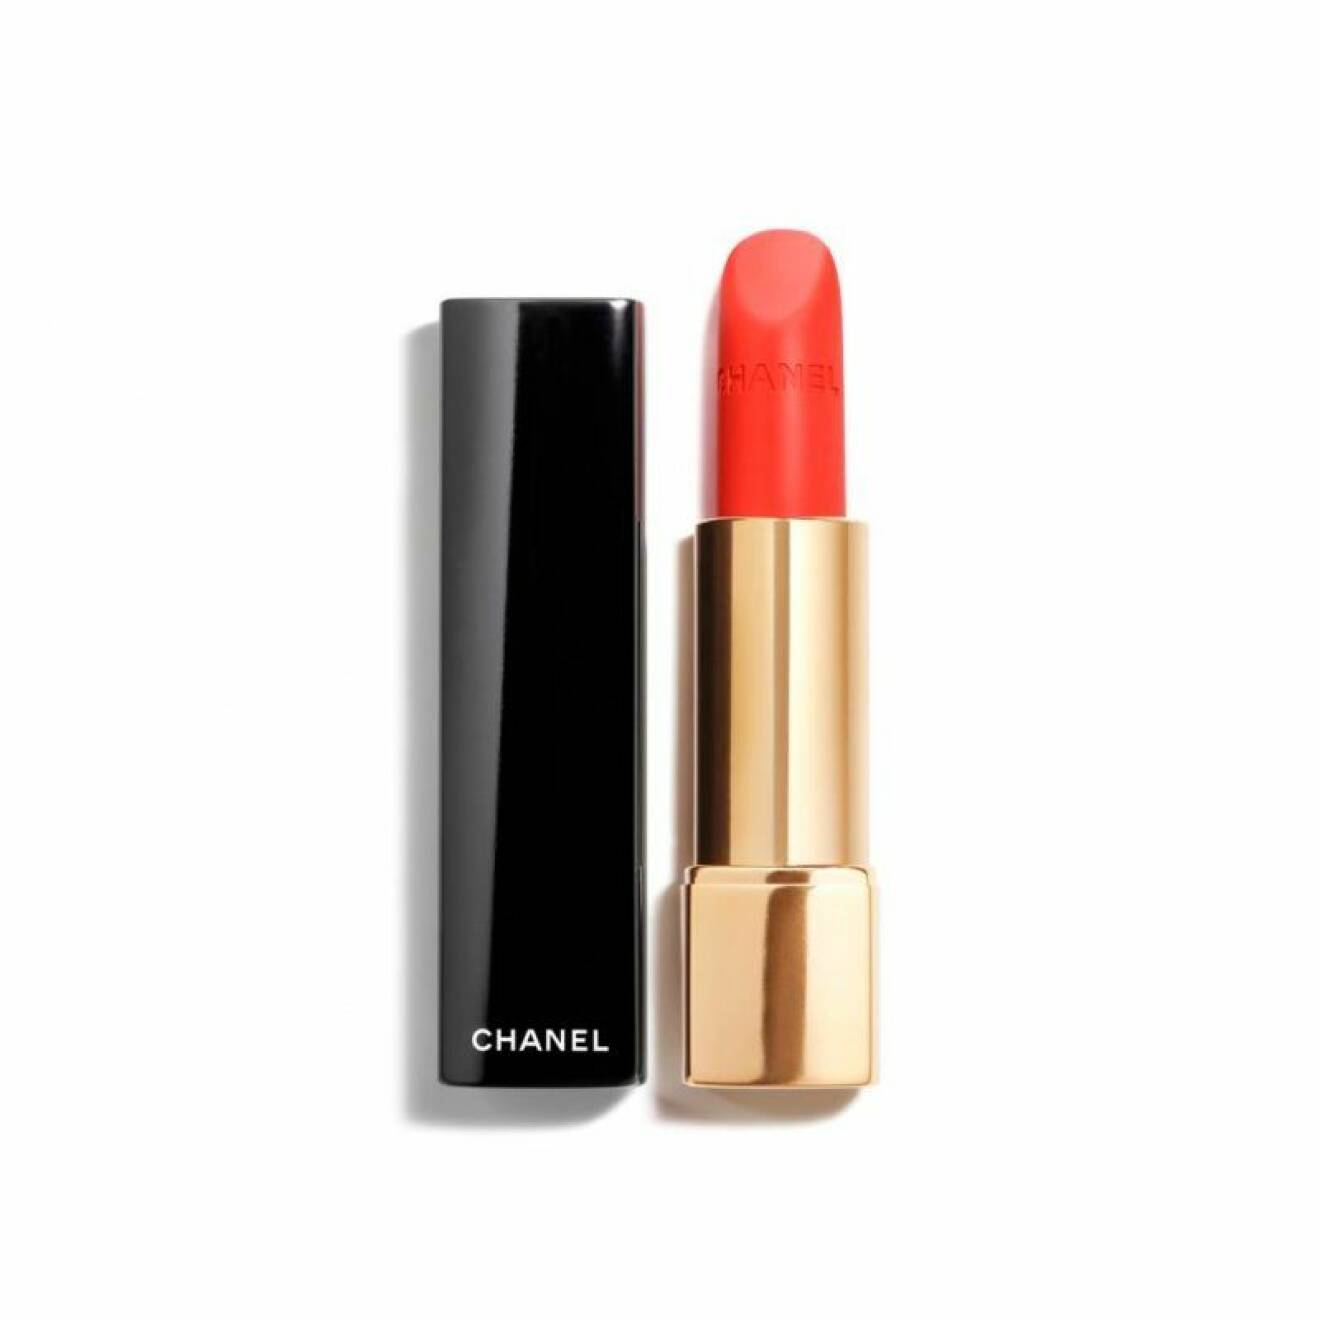 Rouge Allure Velvet Lipstick - 64 First Light, Chanel